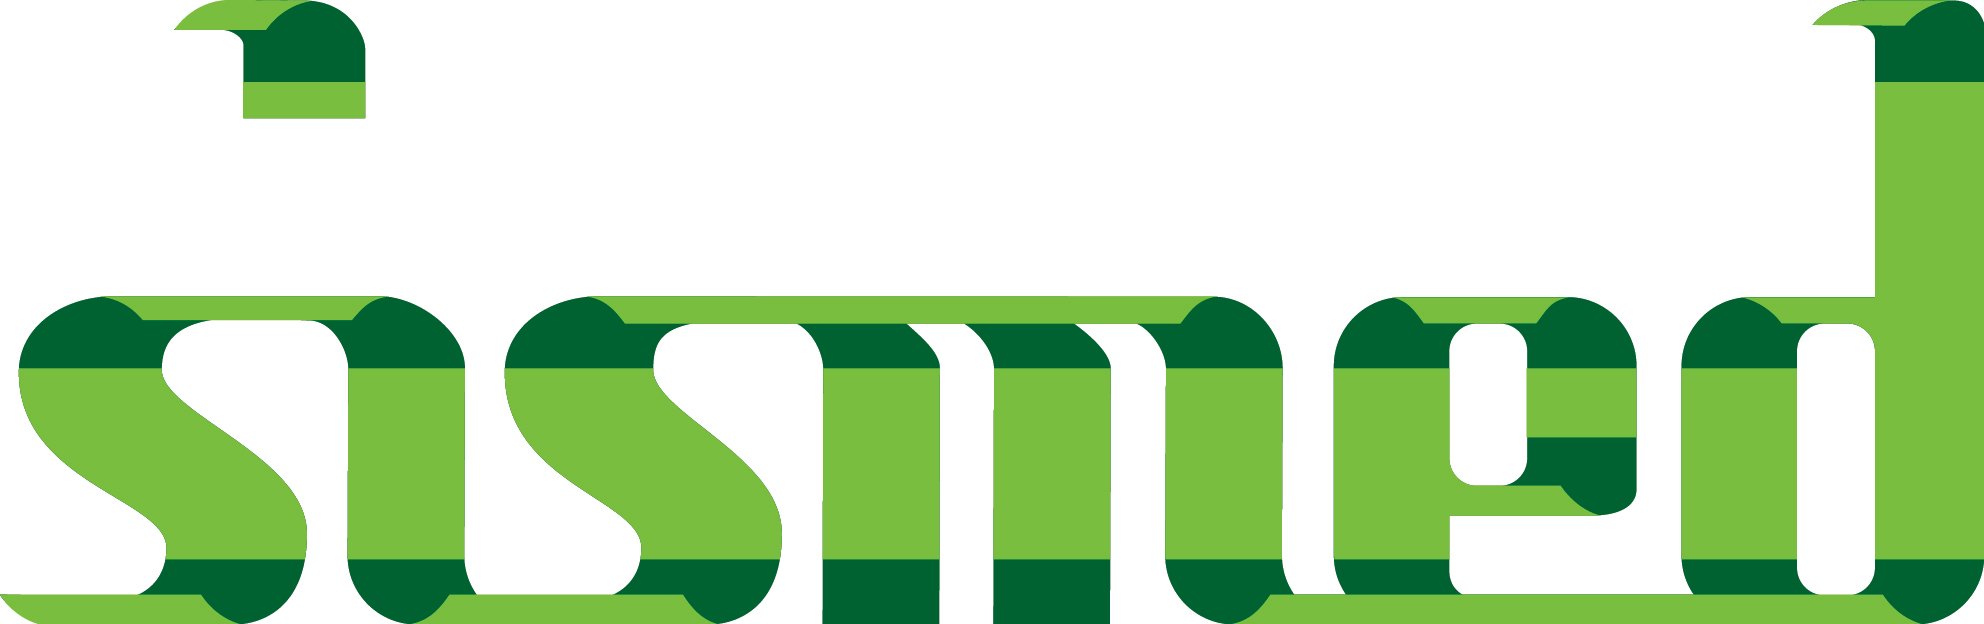 sismed_logo-01